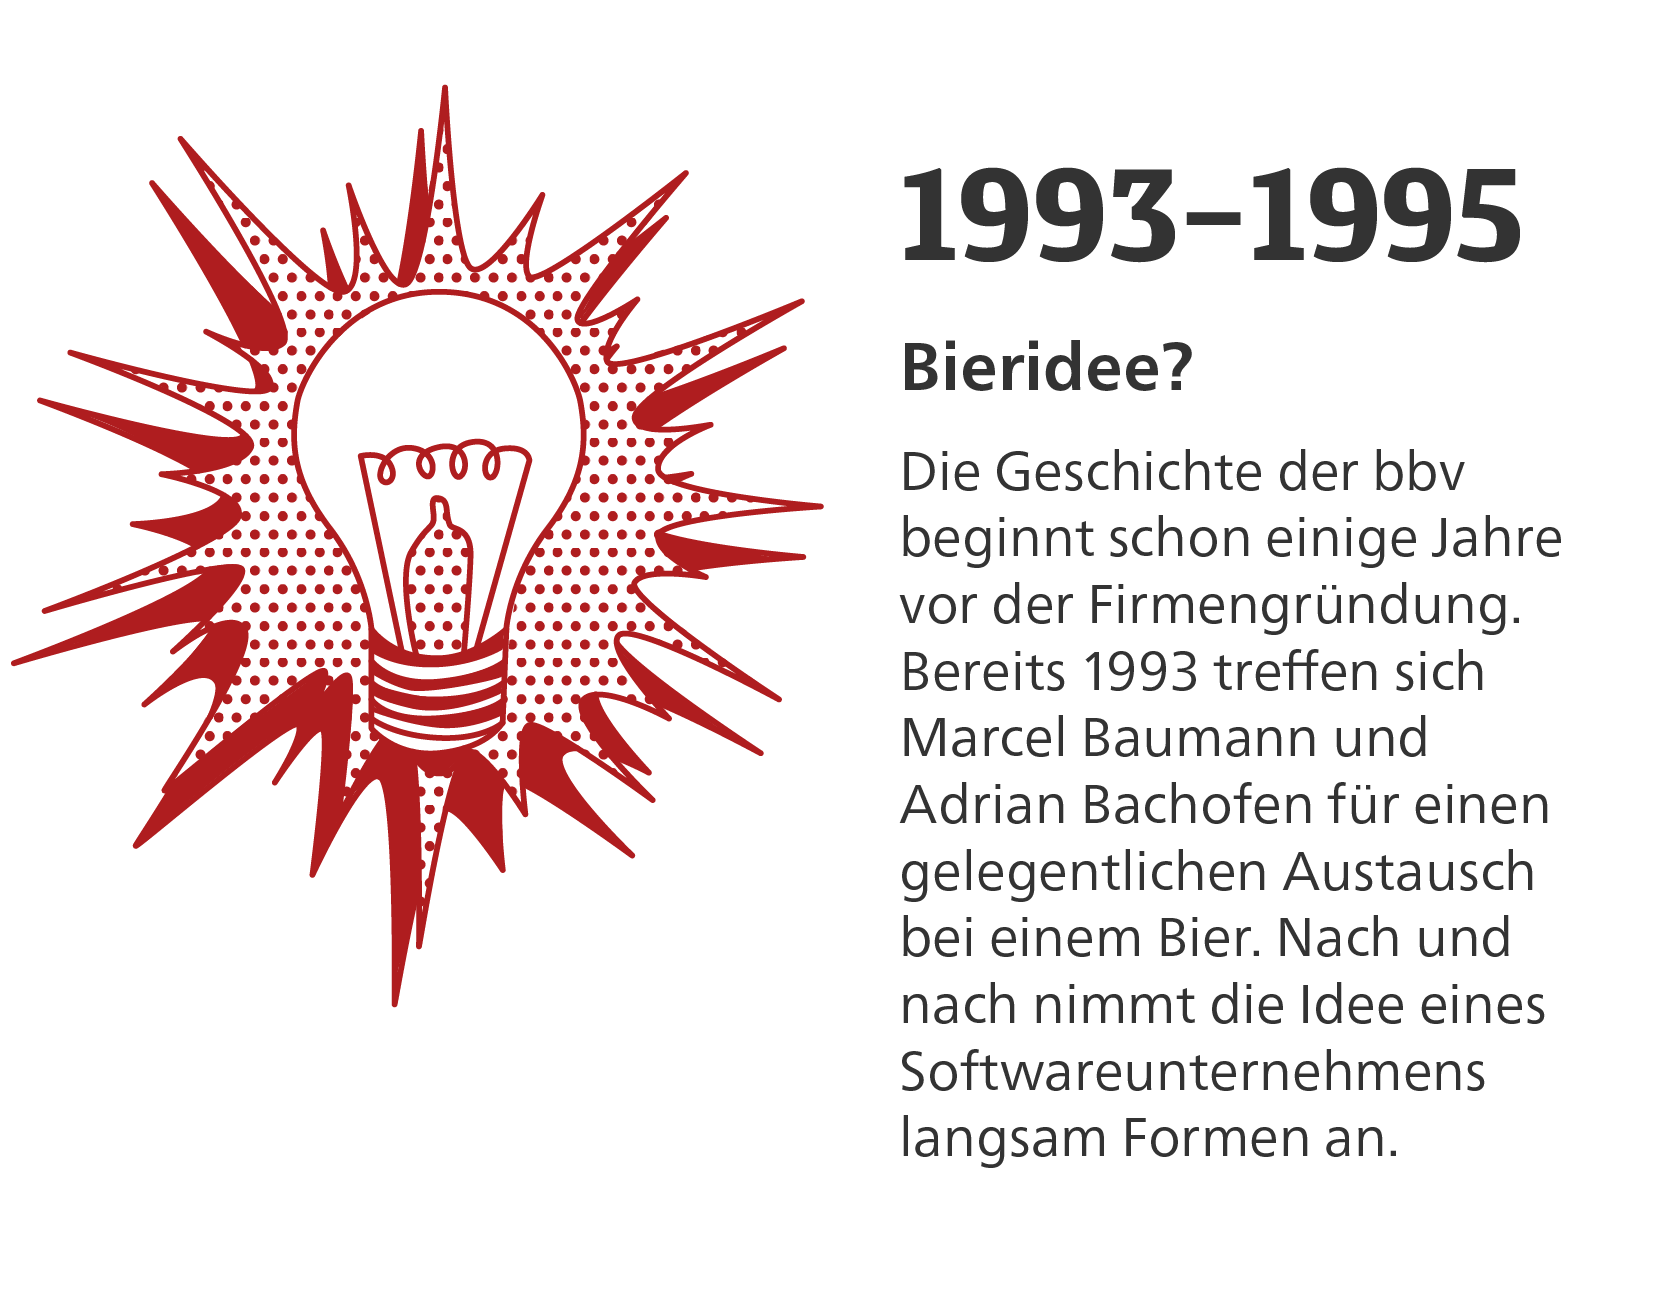 Geschichte der bbv_Zeitstrahl_1993-1995